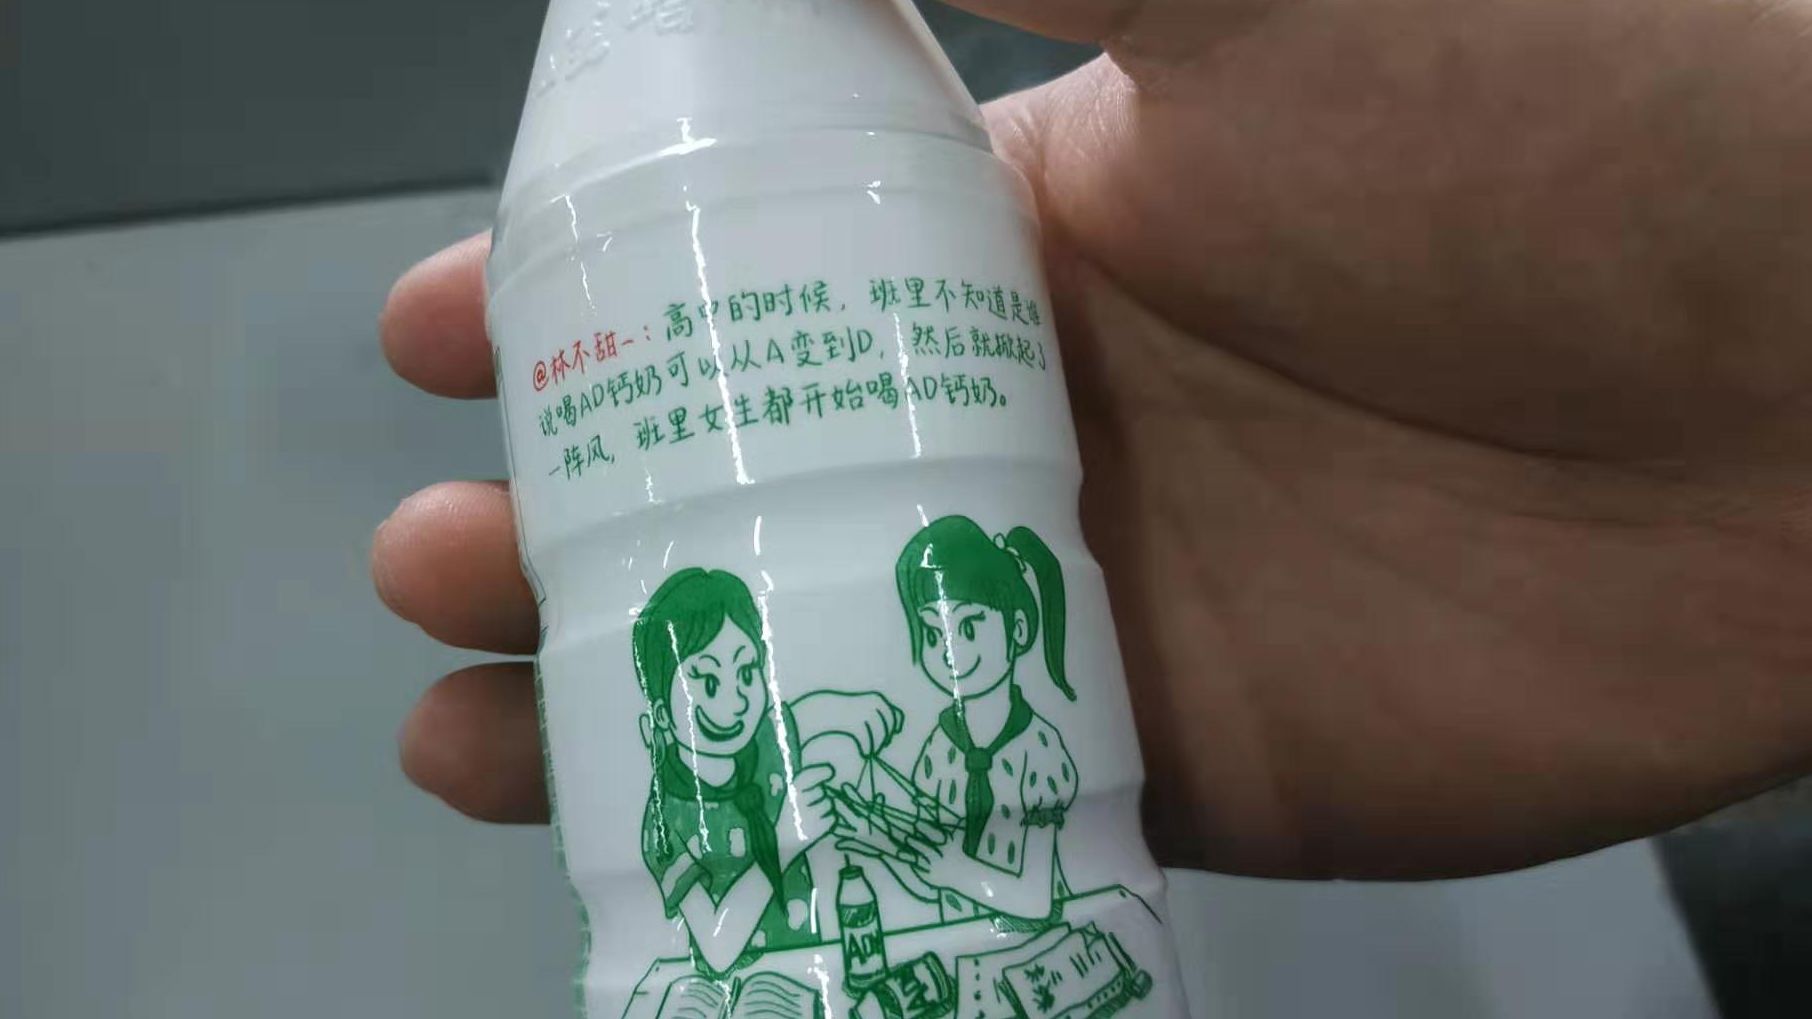 娃哈哈AD钙奶的瓶身上印有“喝AD钙奶可以从A变得D”标语。新京报记者 刘名洋 摄